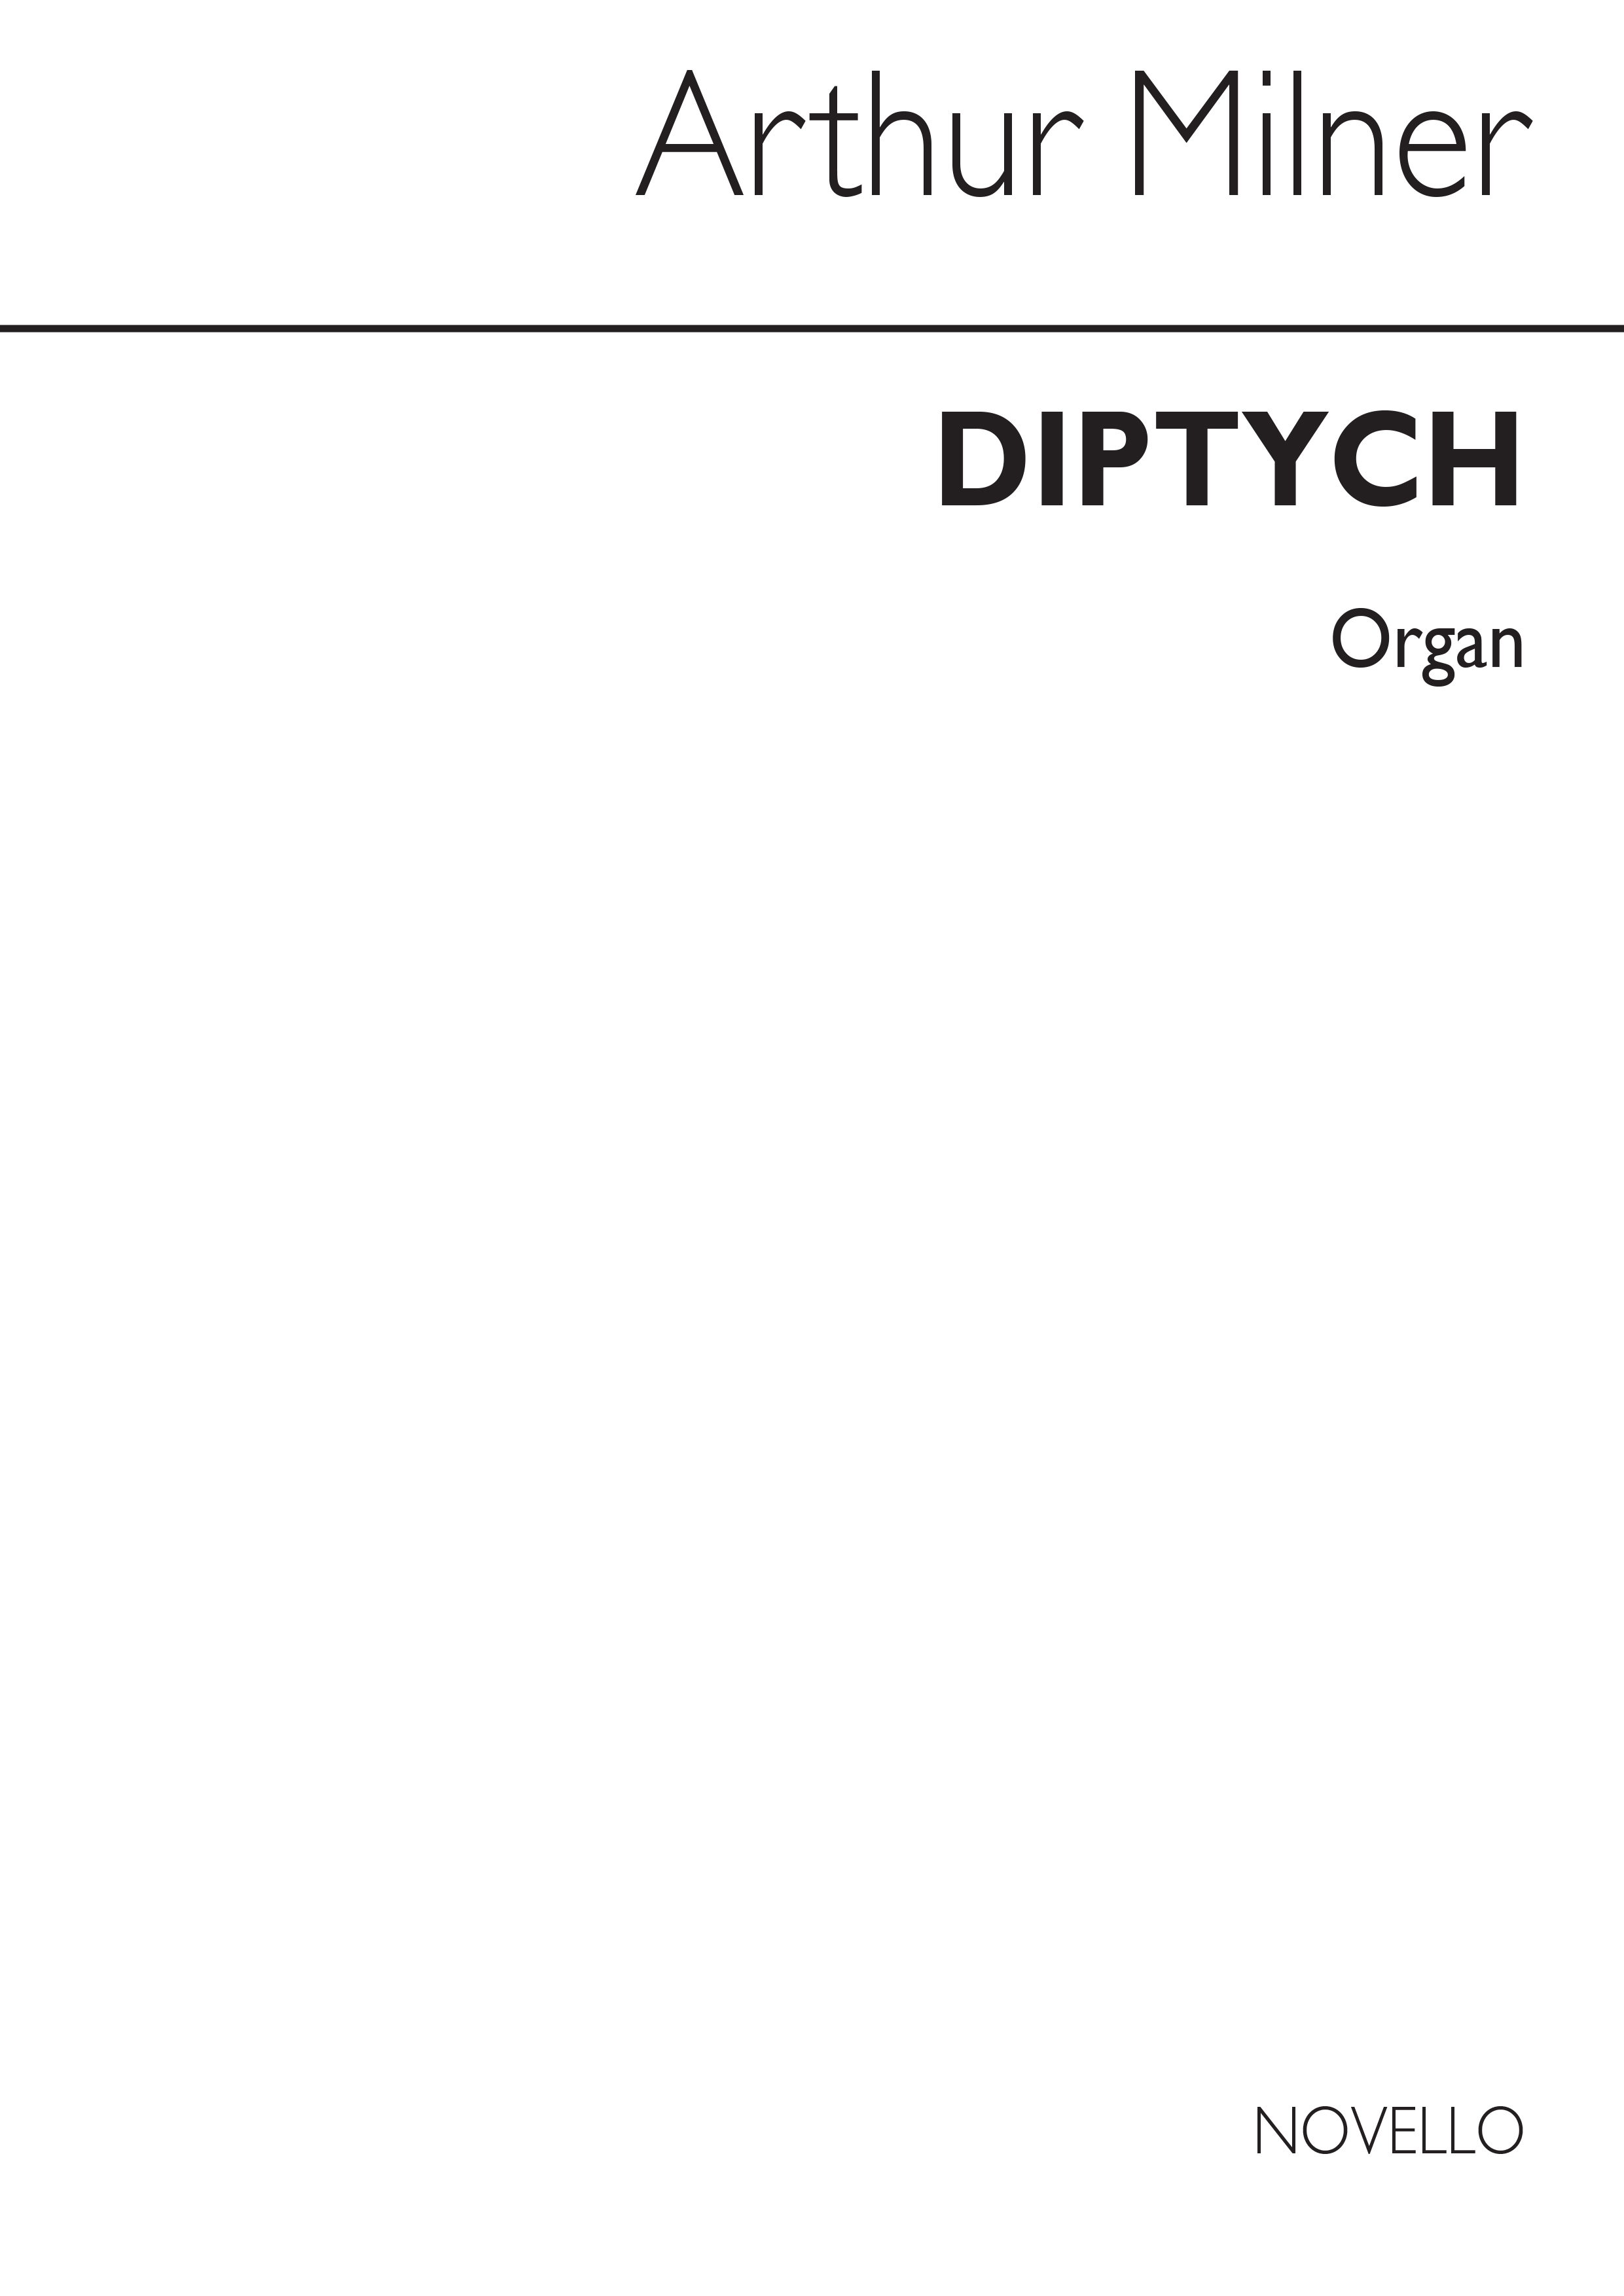 Arthur Milner: Diptych Organ